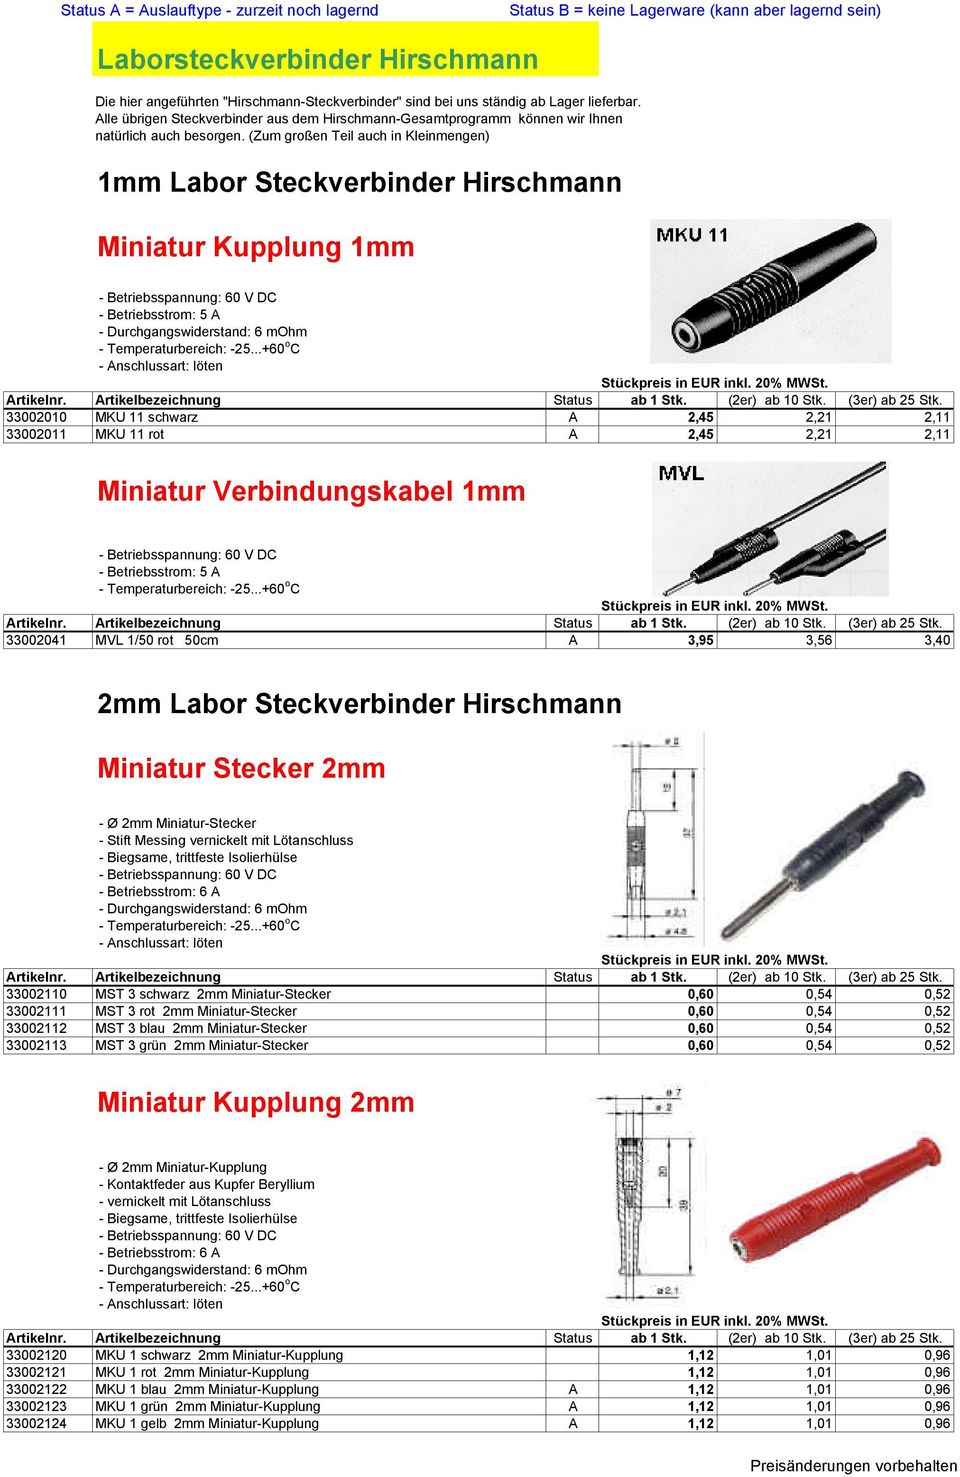 (Zum großen Teil auch in Kleinmengen) 1mm Labor Steckverbinder Hirschmann Miniatur Kupplung 1mm - Betriebsstrom: 5 A - Durchgangswiderstand: 6 mohm - Temperaturbereich: -25.